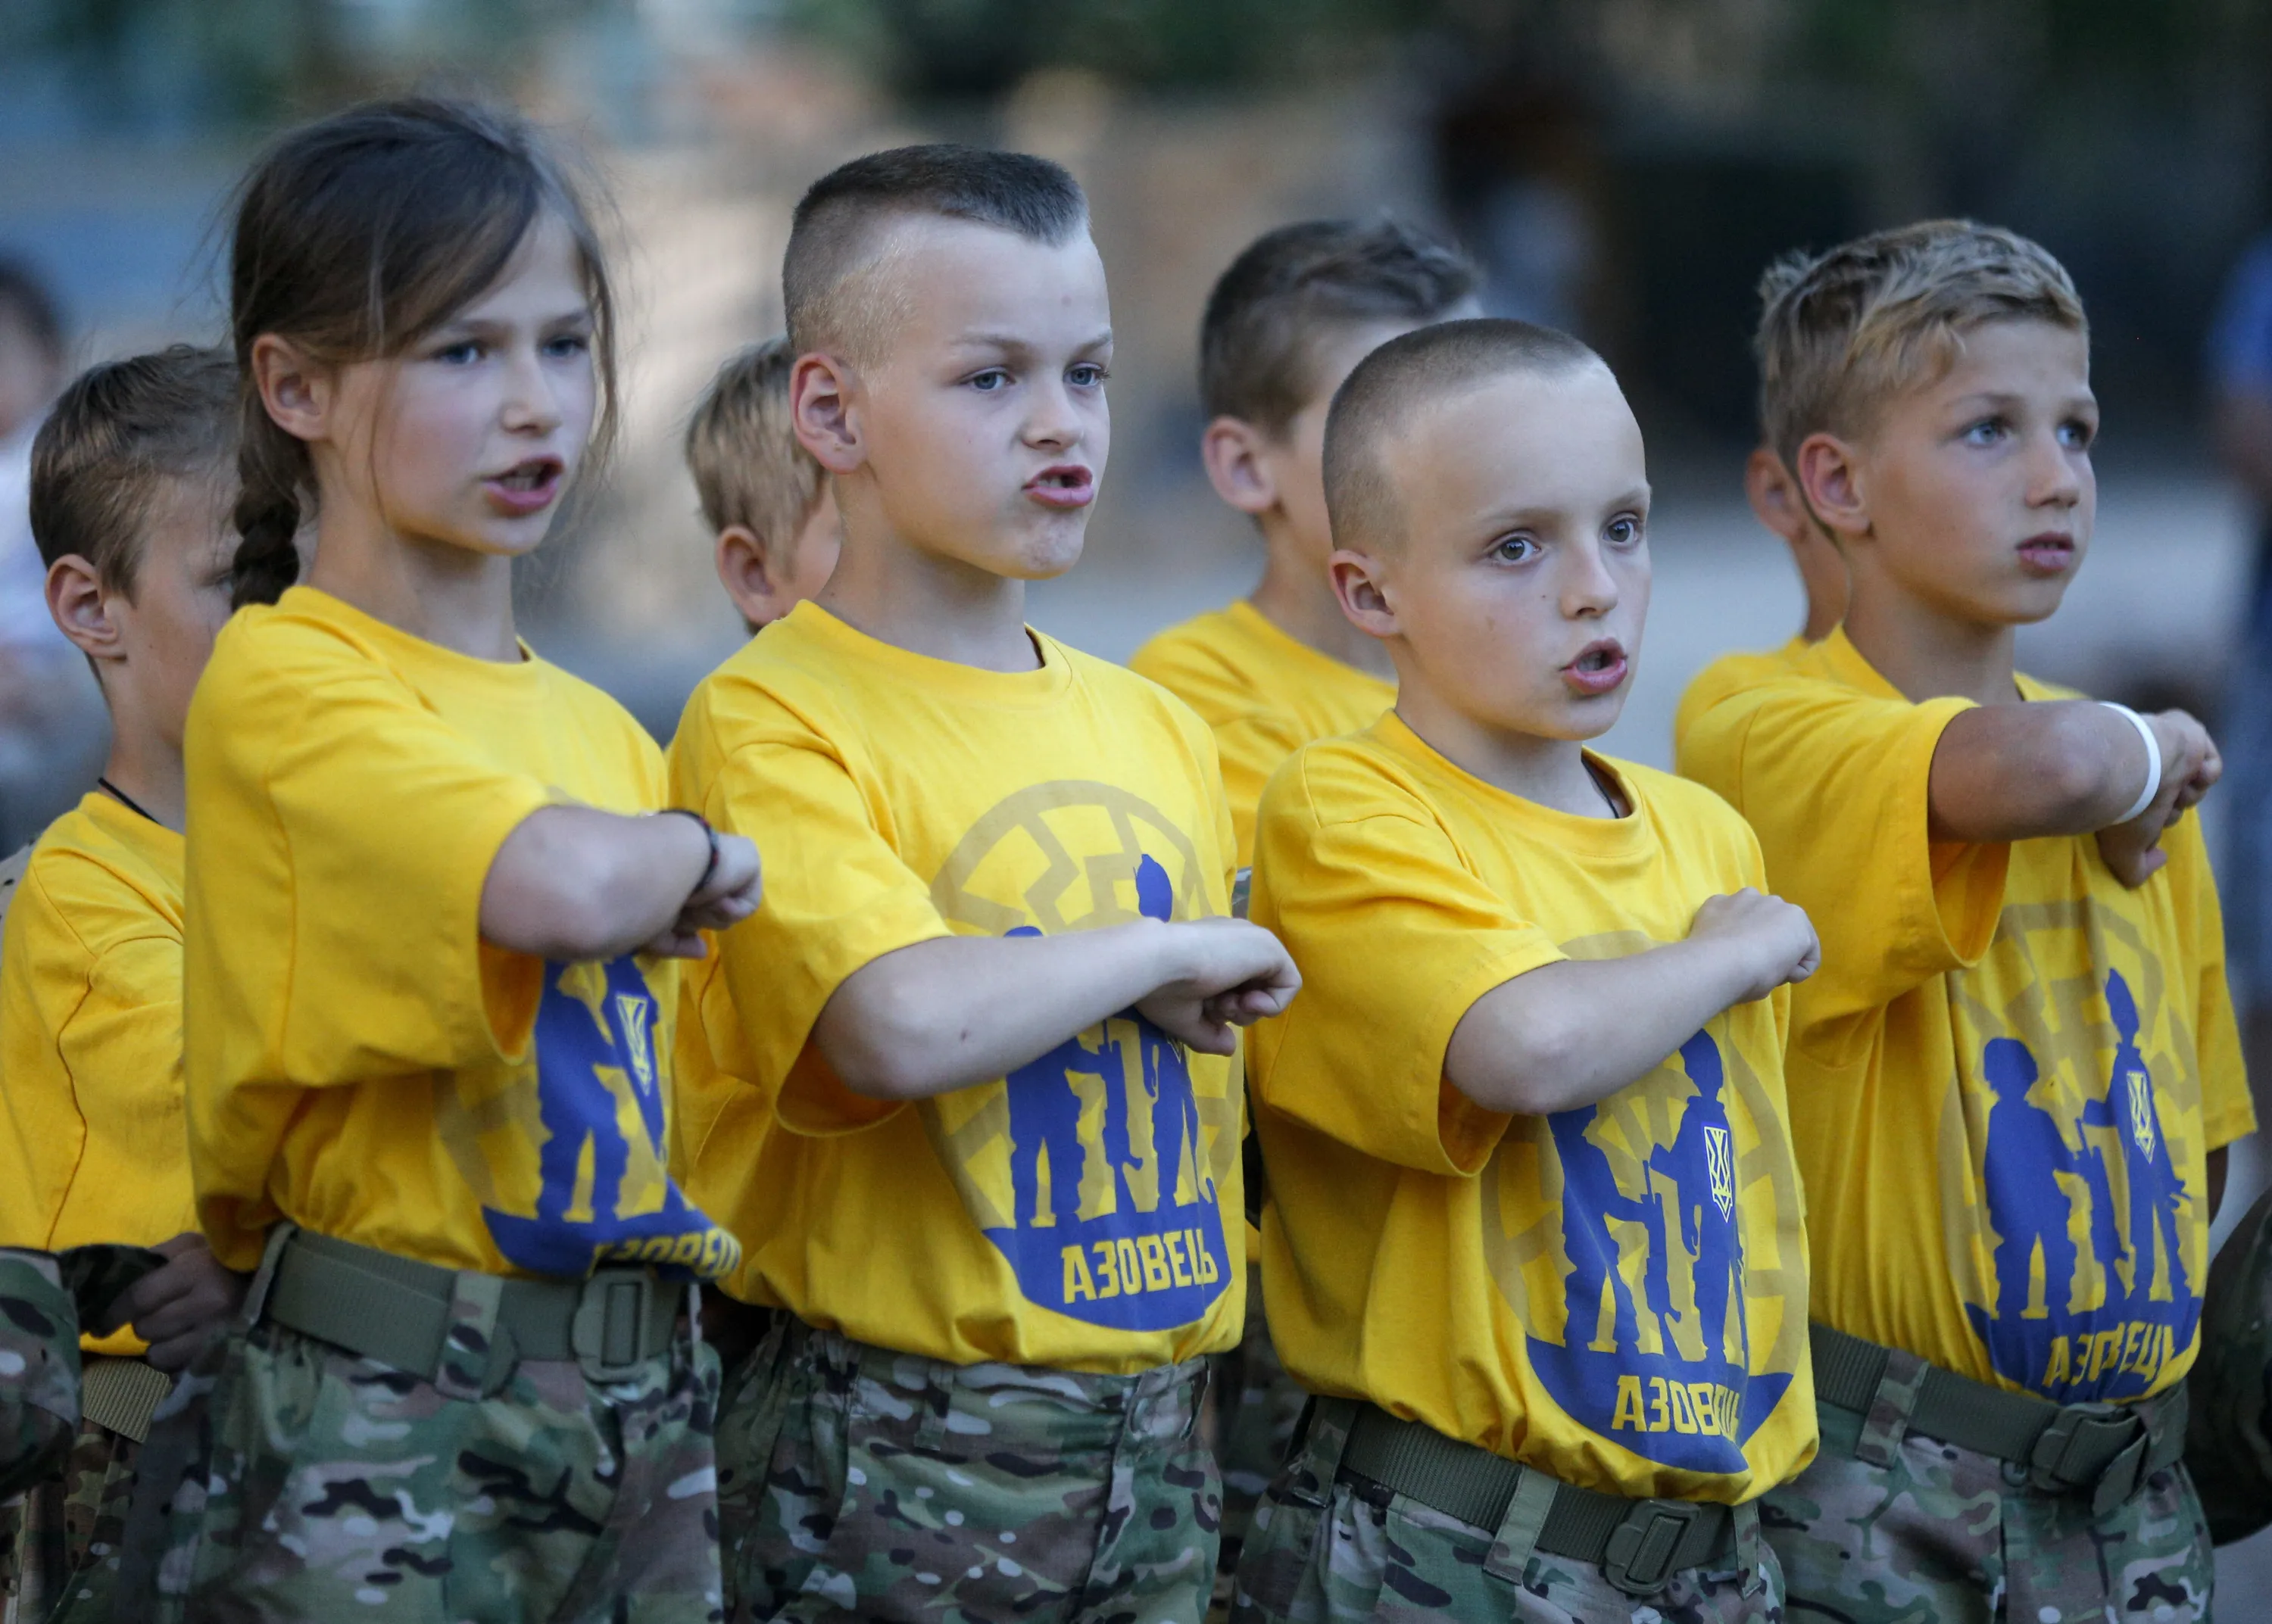 Фото детей украины. Лагерь Азовец Украина. Детские лагеря Азовец в Украине. Детские лагеря Азовцев на Украине.